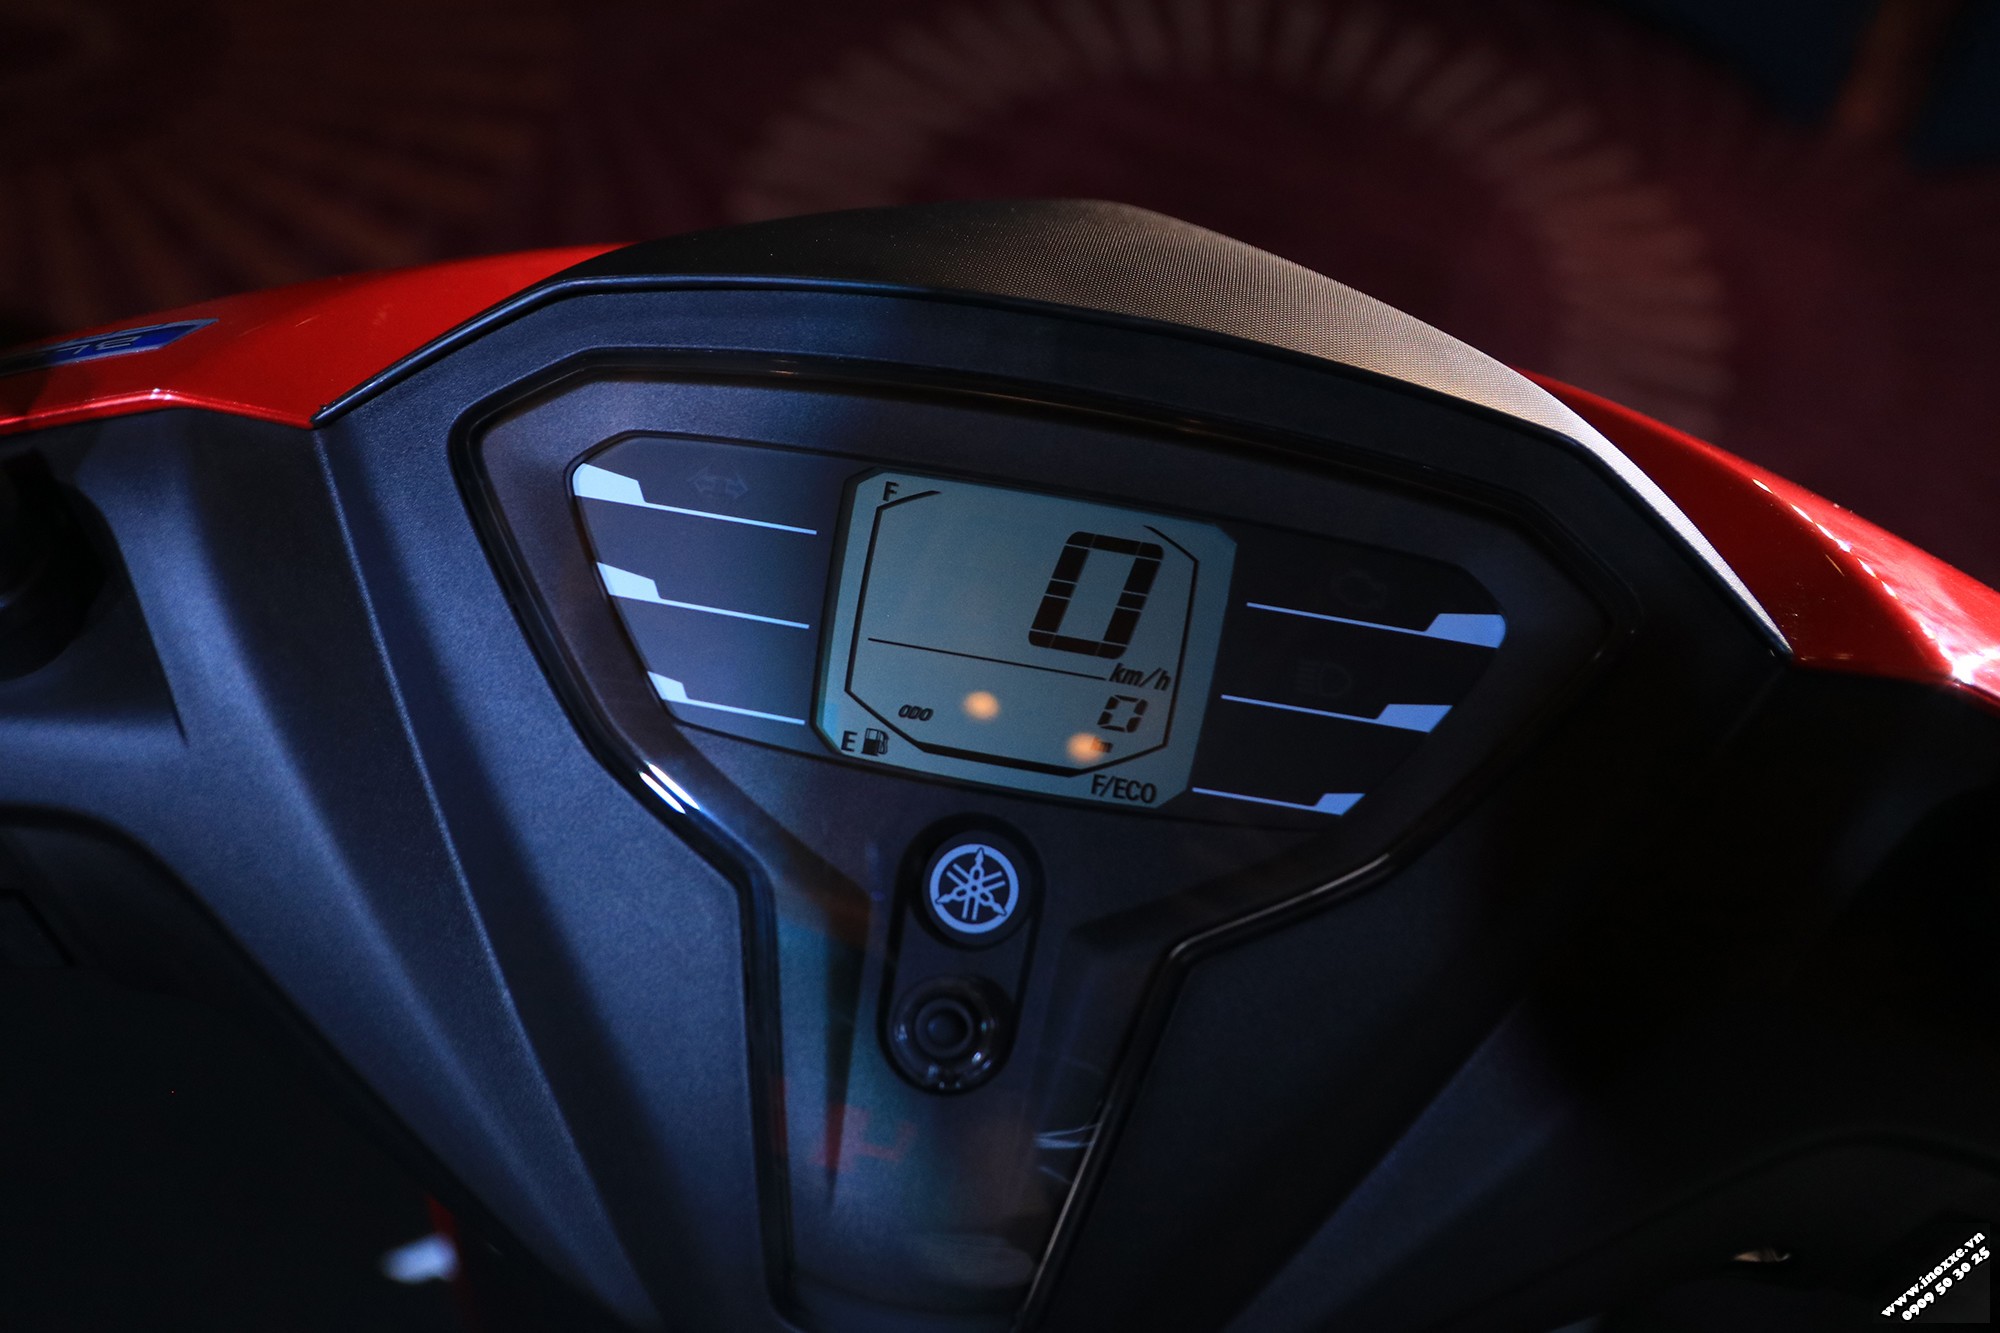 Các thông số kỹ thuật trên đồng hồ điện tử của xe